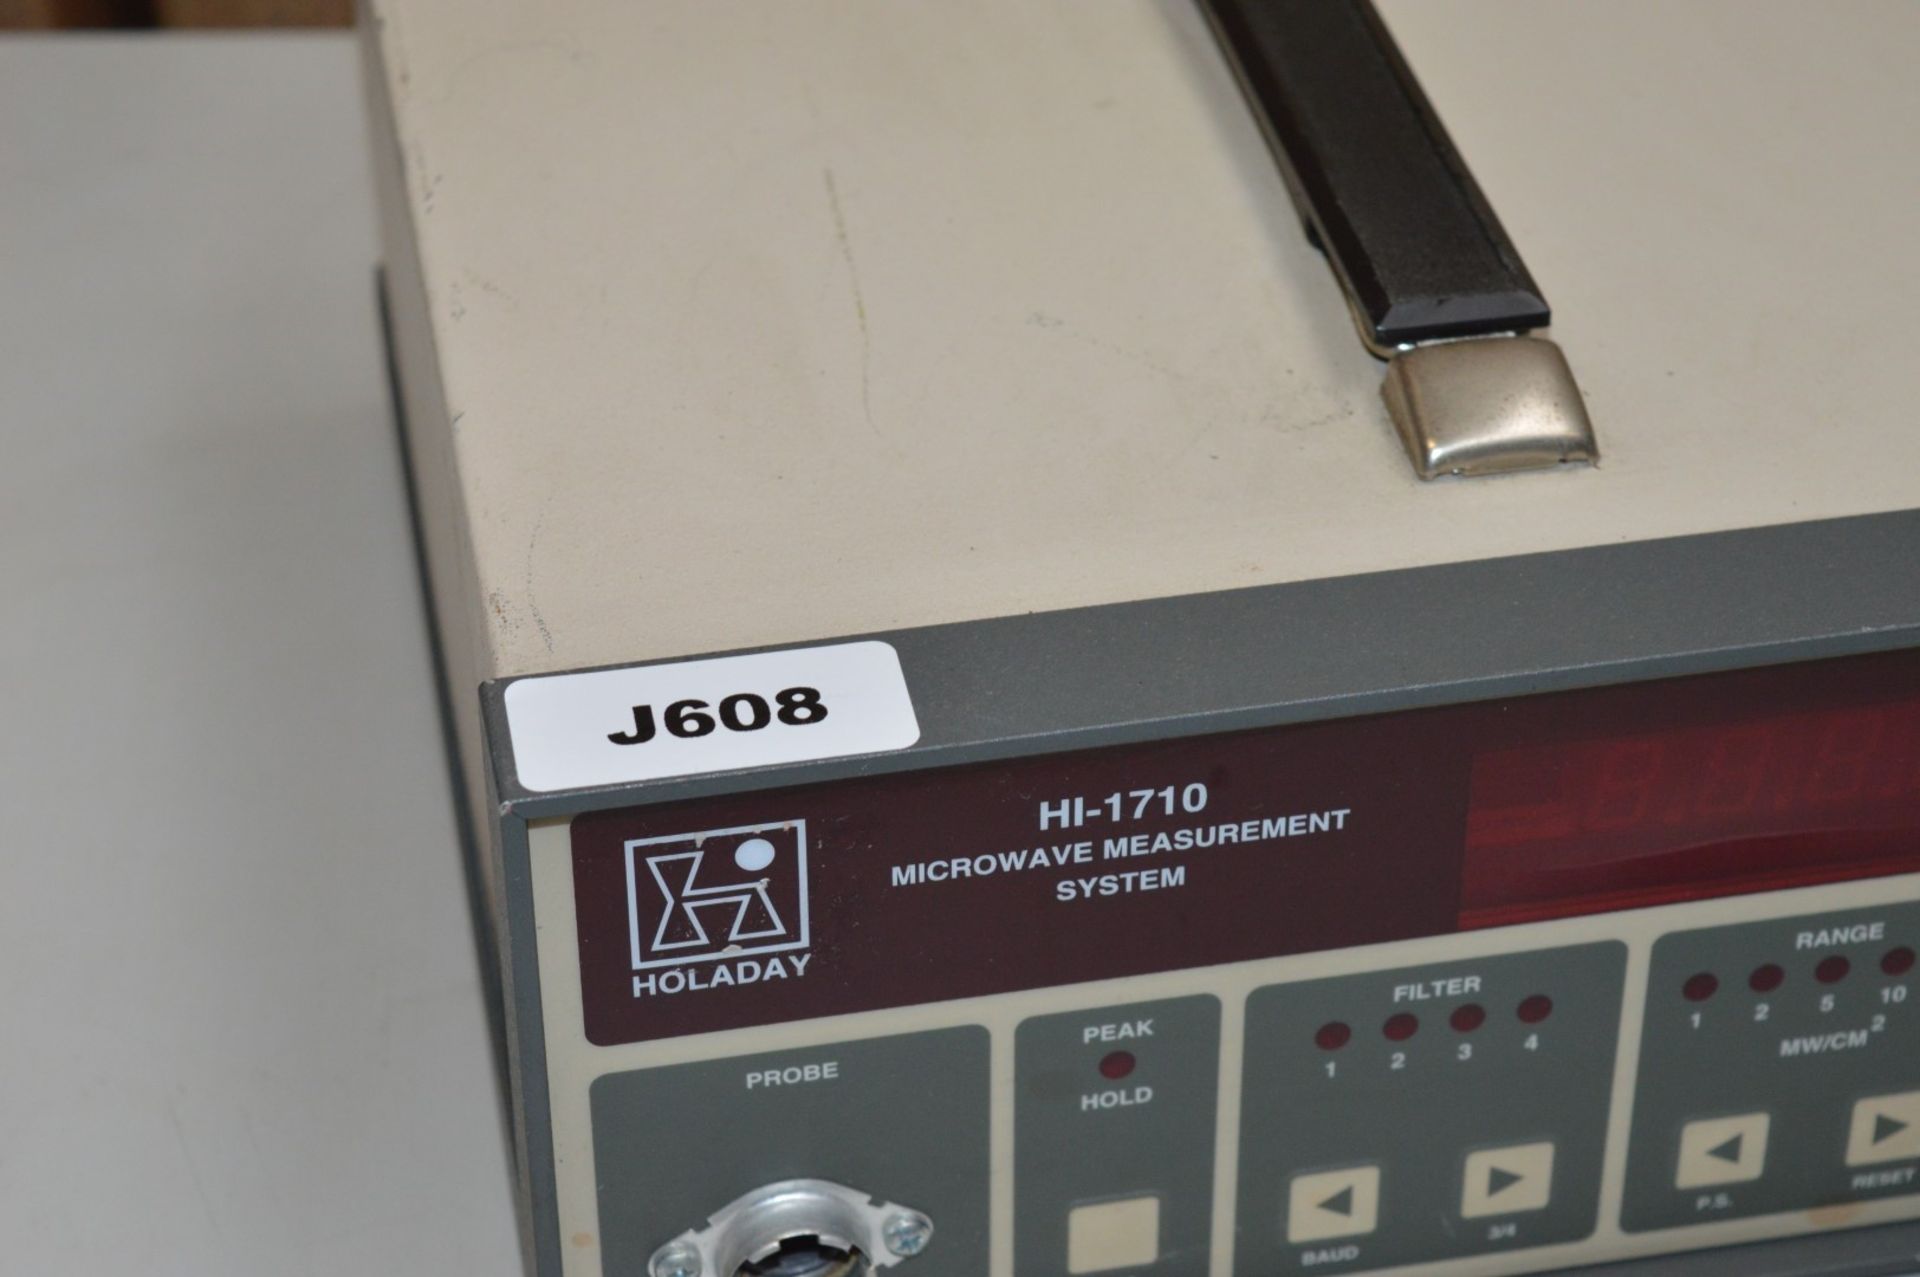 1 HOLDAY Microwave Measurement System - Model HI-1710 - Vintage Test Equipment - CL011 - Ref - Image 4 of 6